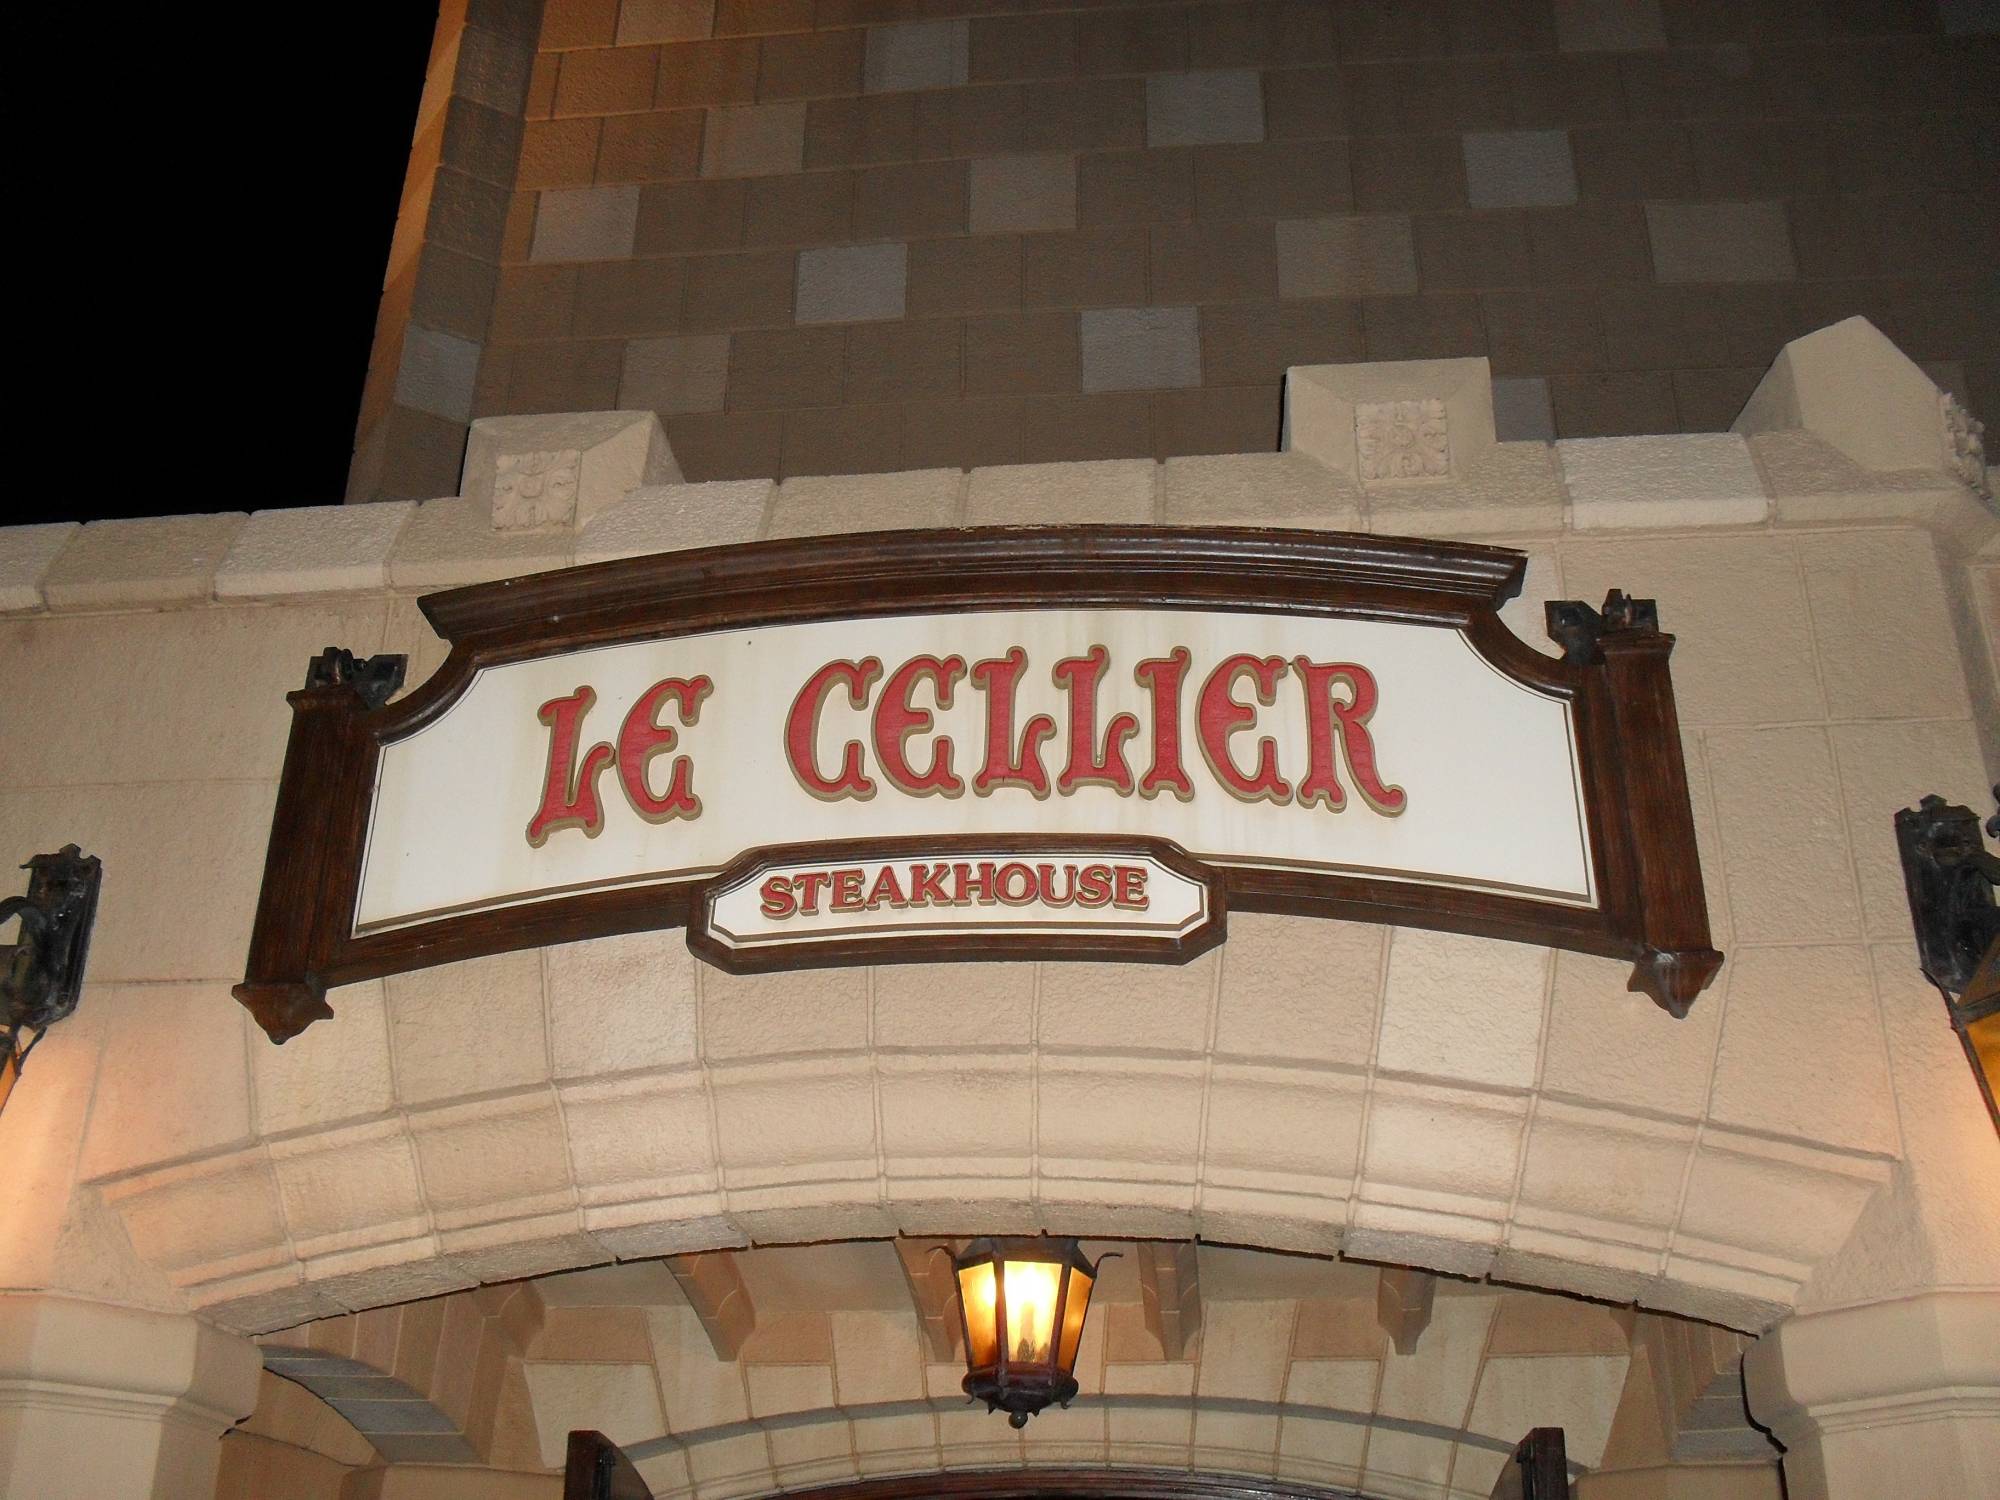 Le Cellier Sign